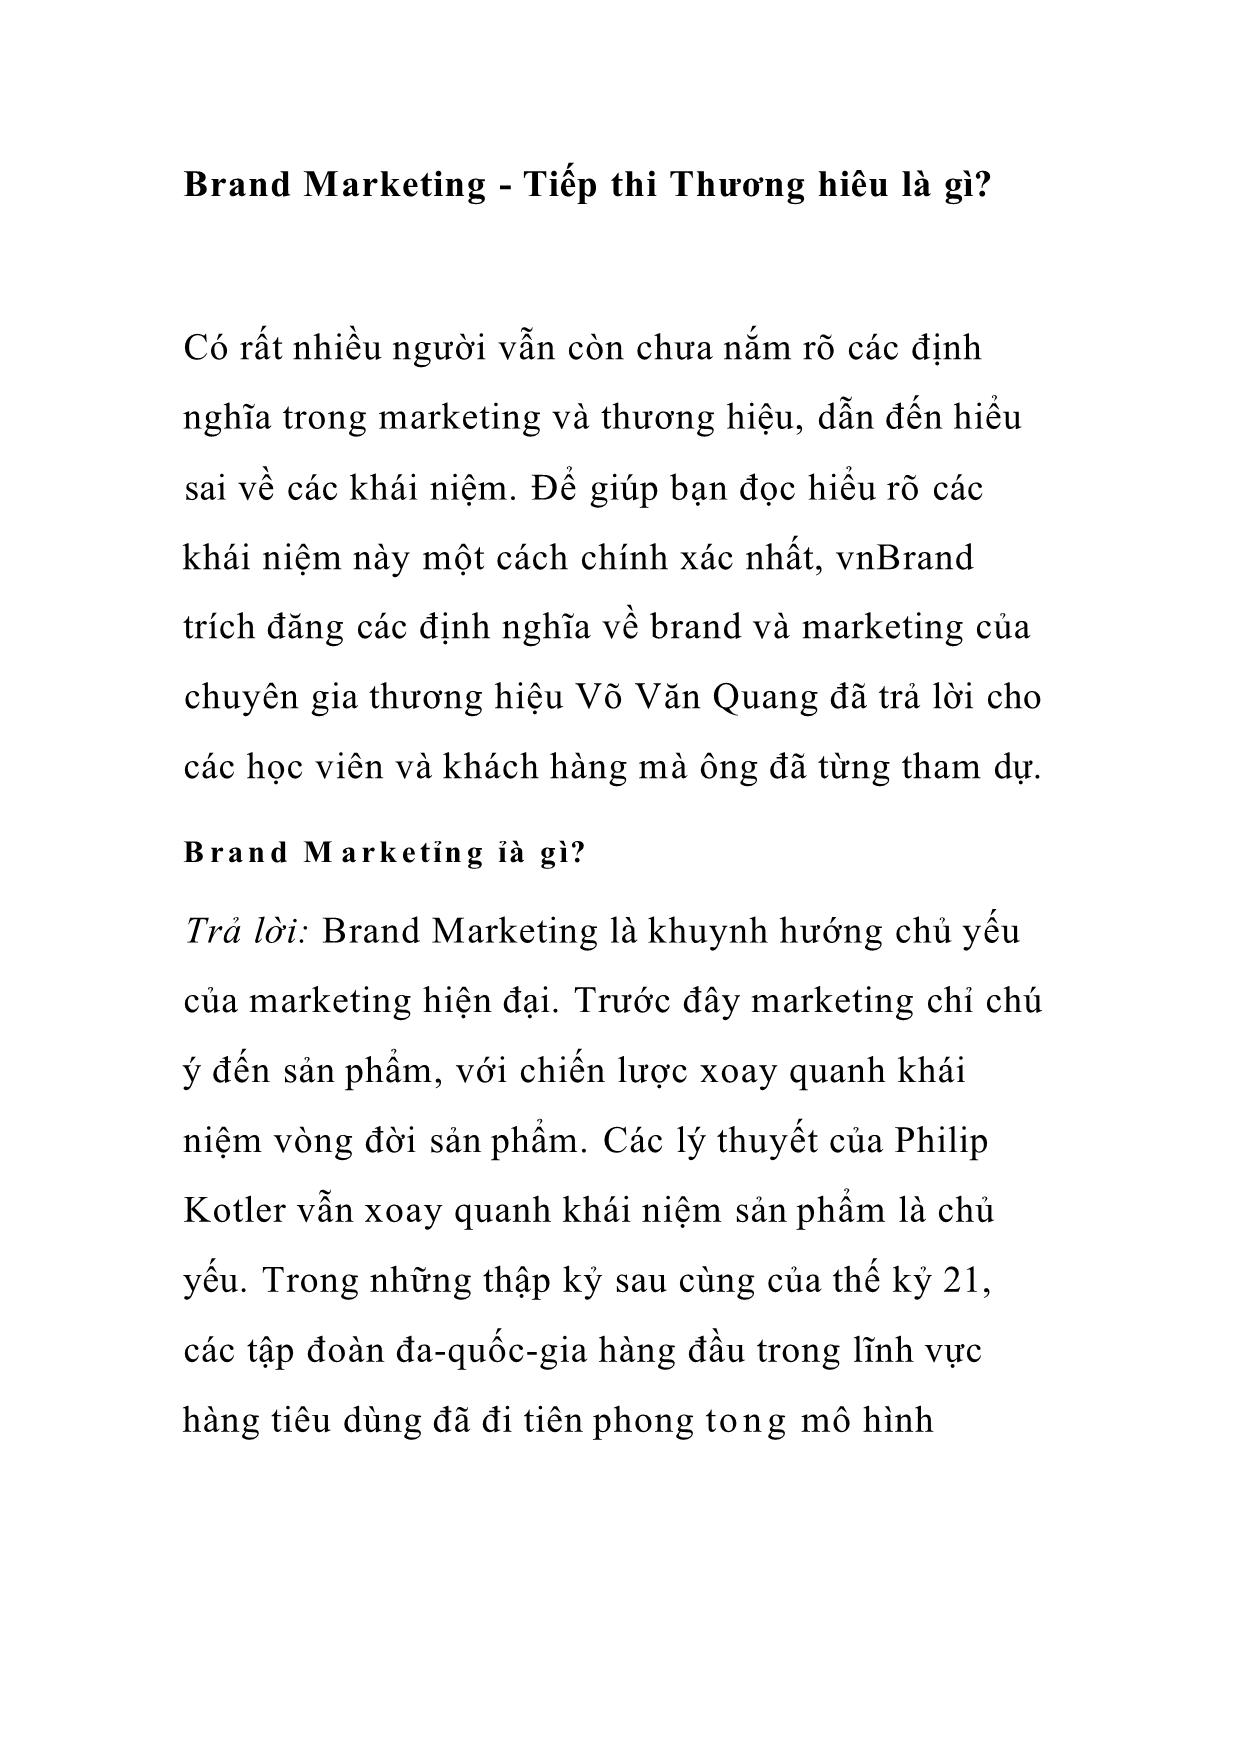 Brand Marketing - Tiếp thị Thương hiệu là gì trang 1